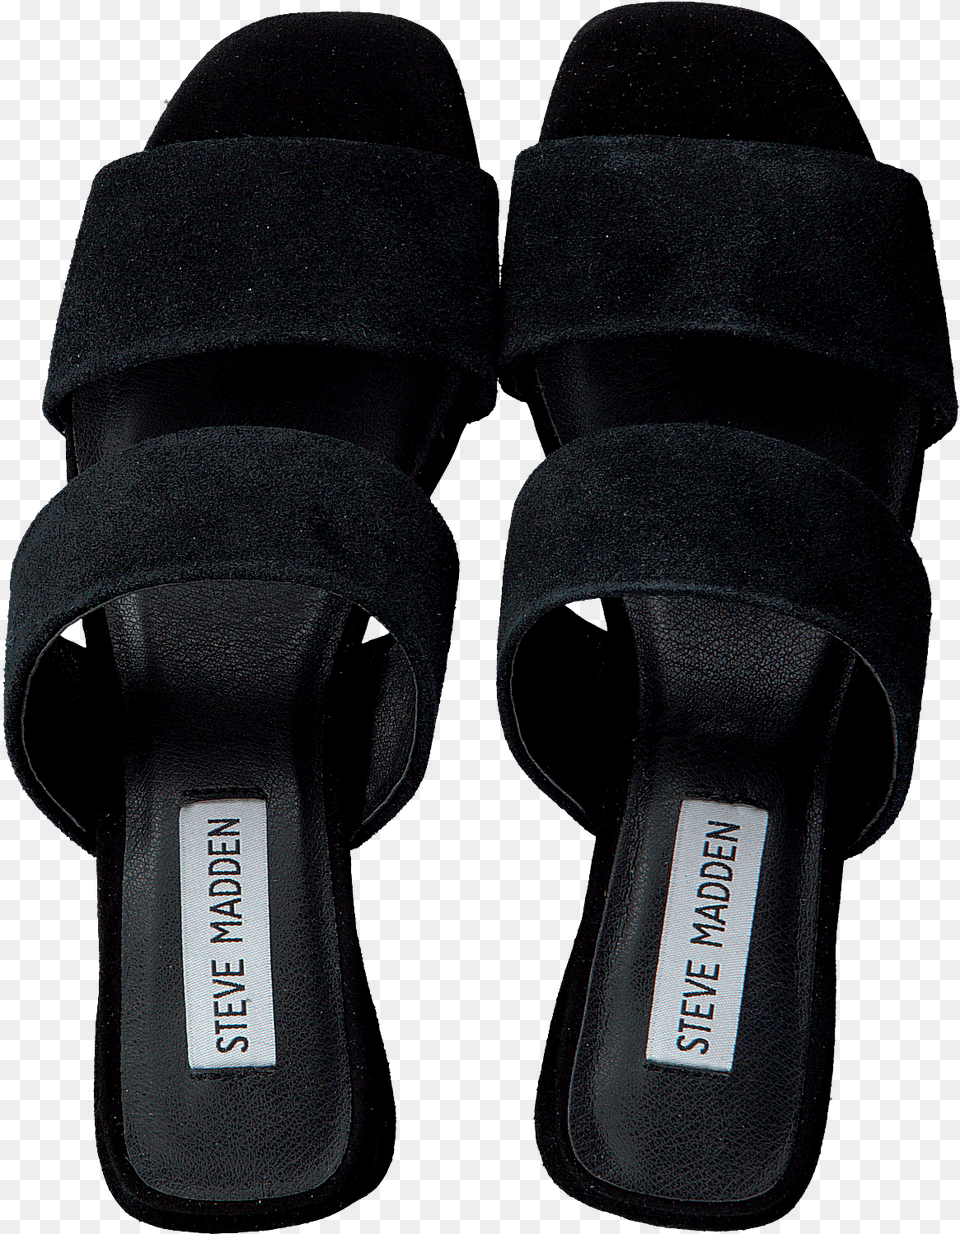 Black Steve Madden Sneakers Keline Omodacom, Clothing, Footwear, Sandal, Shoe Png Image